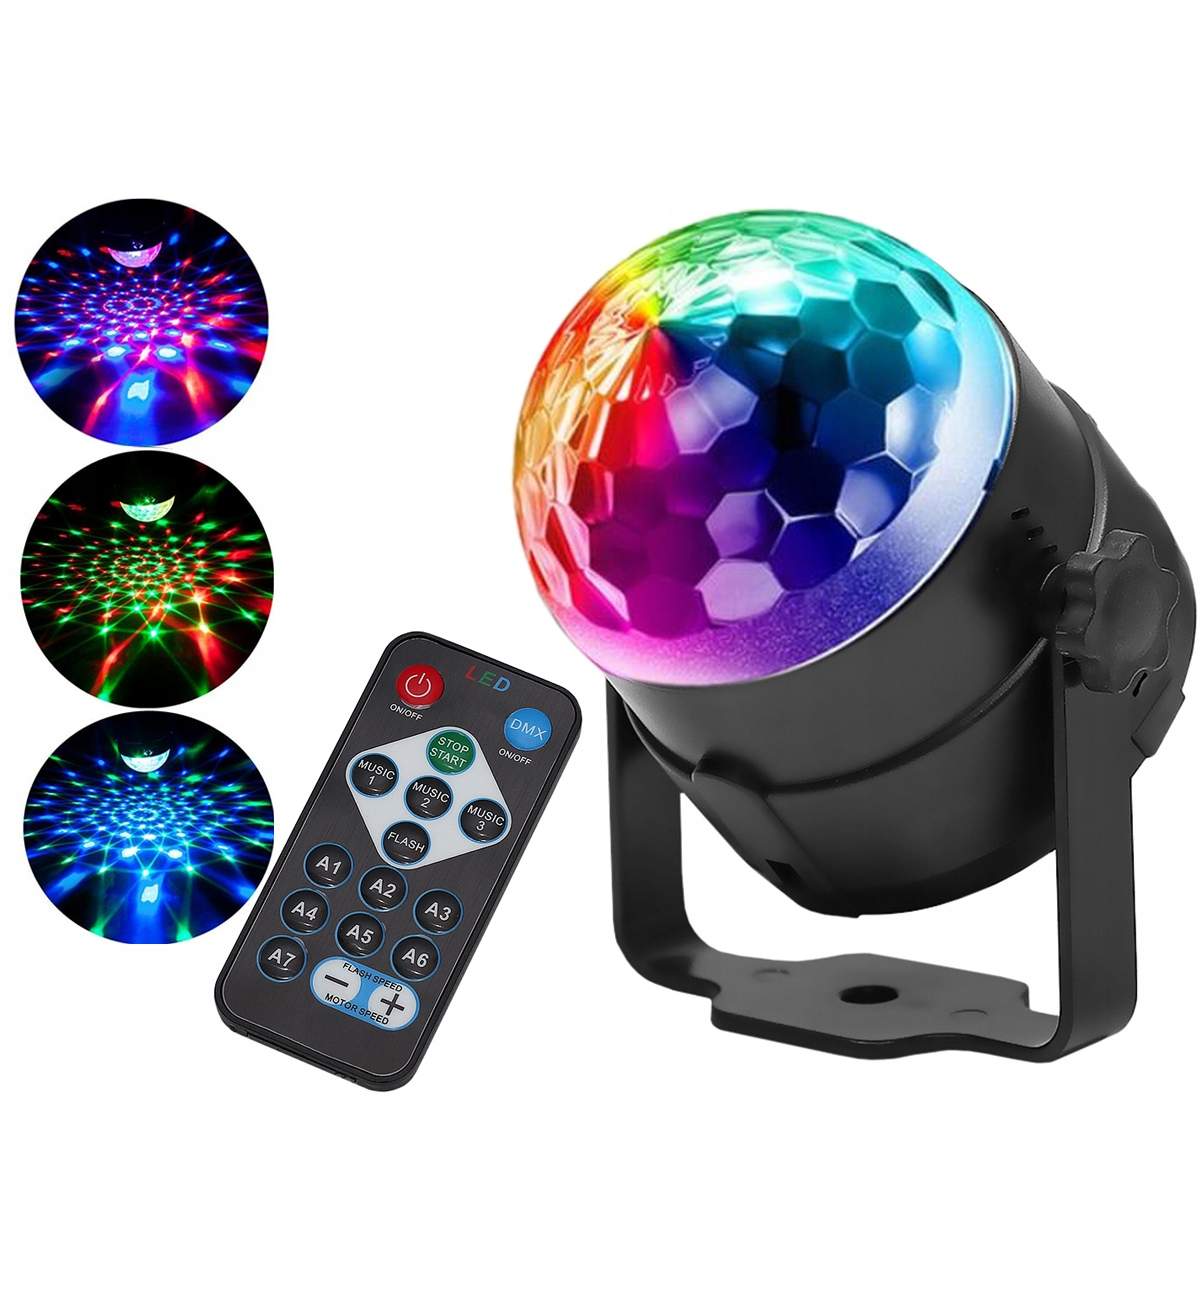 Emotion pulse Frill Proiector Laser Disco cu Senzor de Sunet, LED RGB Multicolor, 7 Combinatii  de Culori si Lumini, Telecomanda - ManiaMall